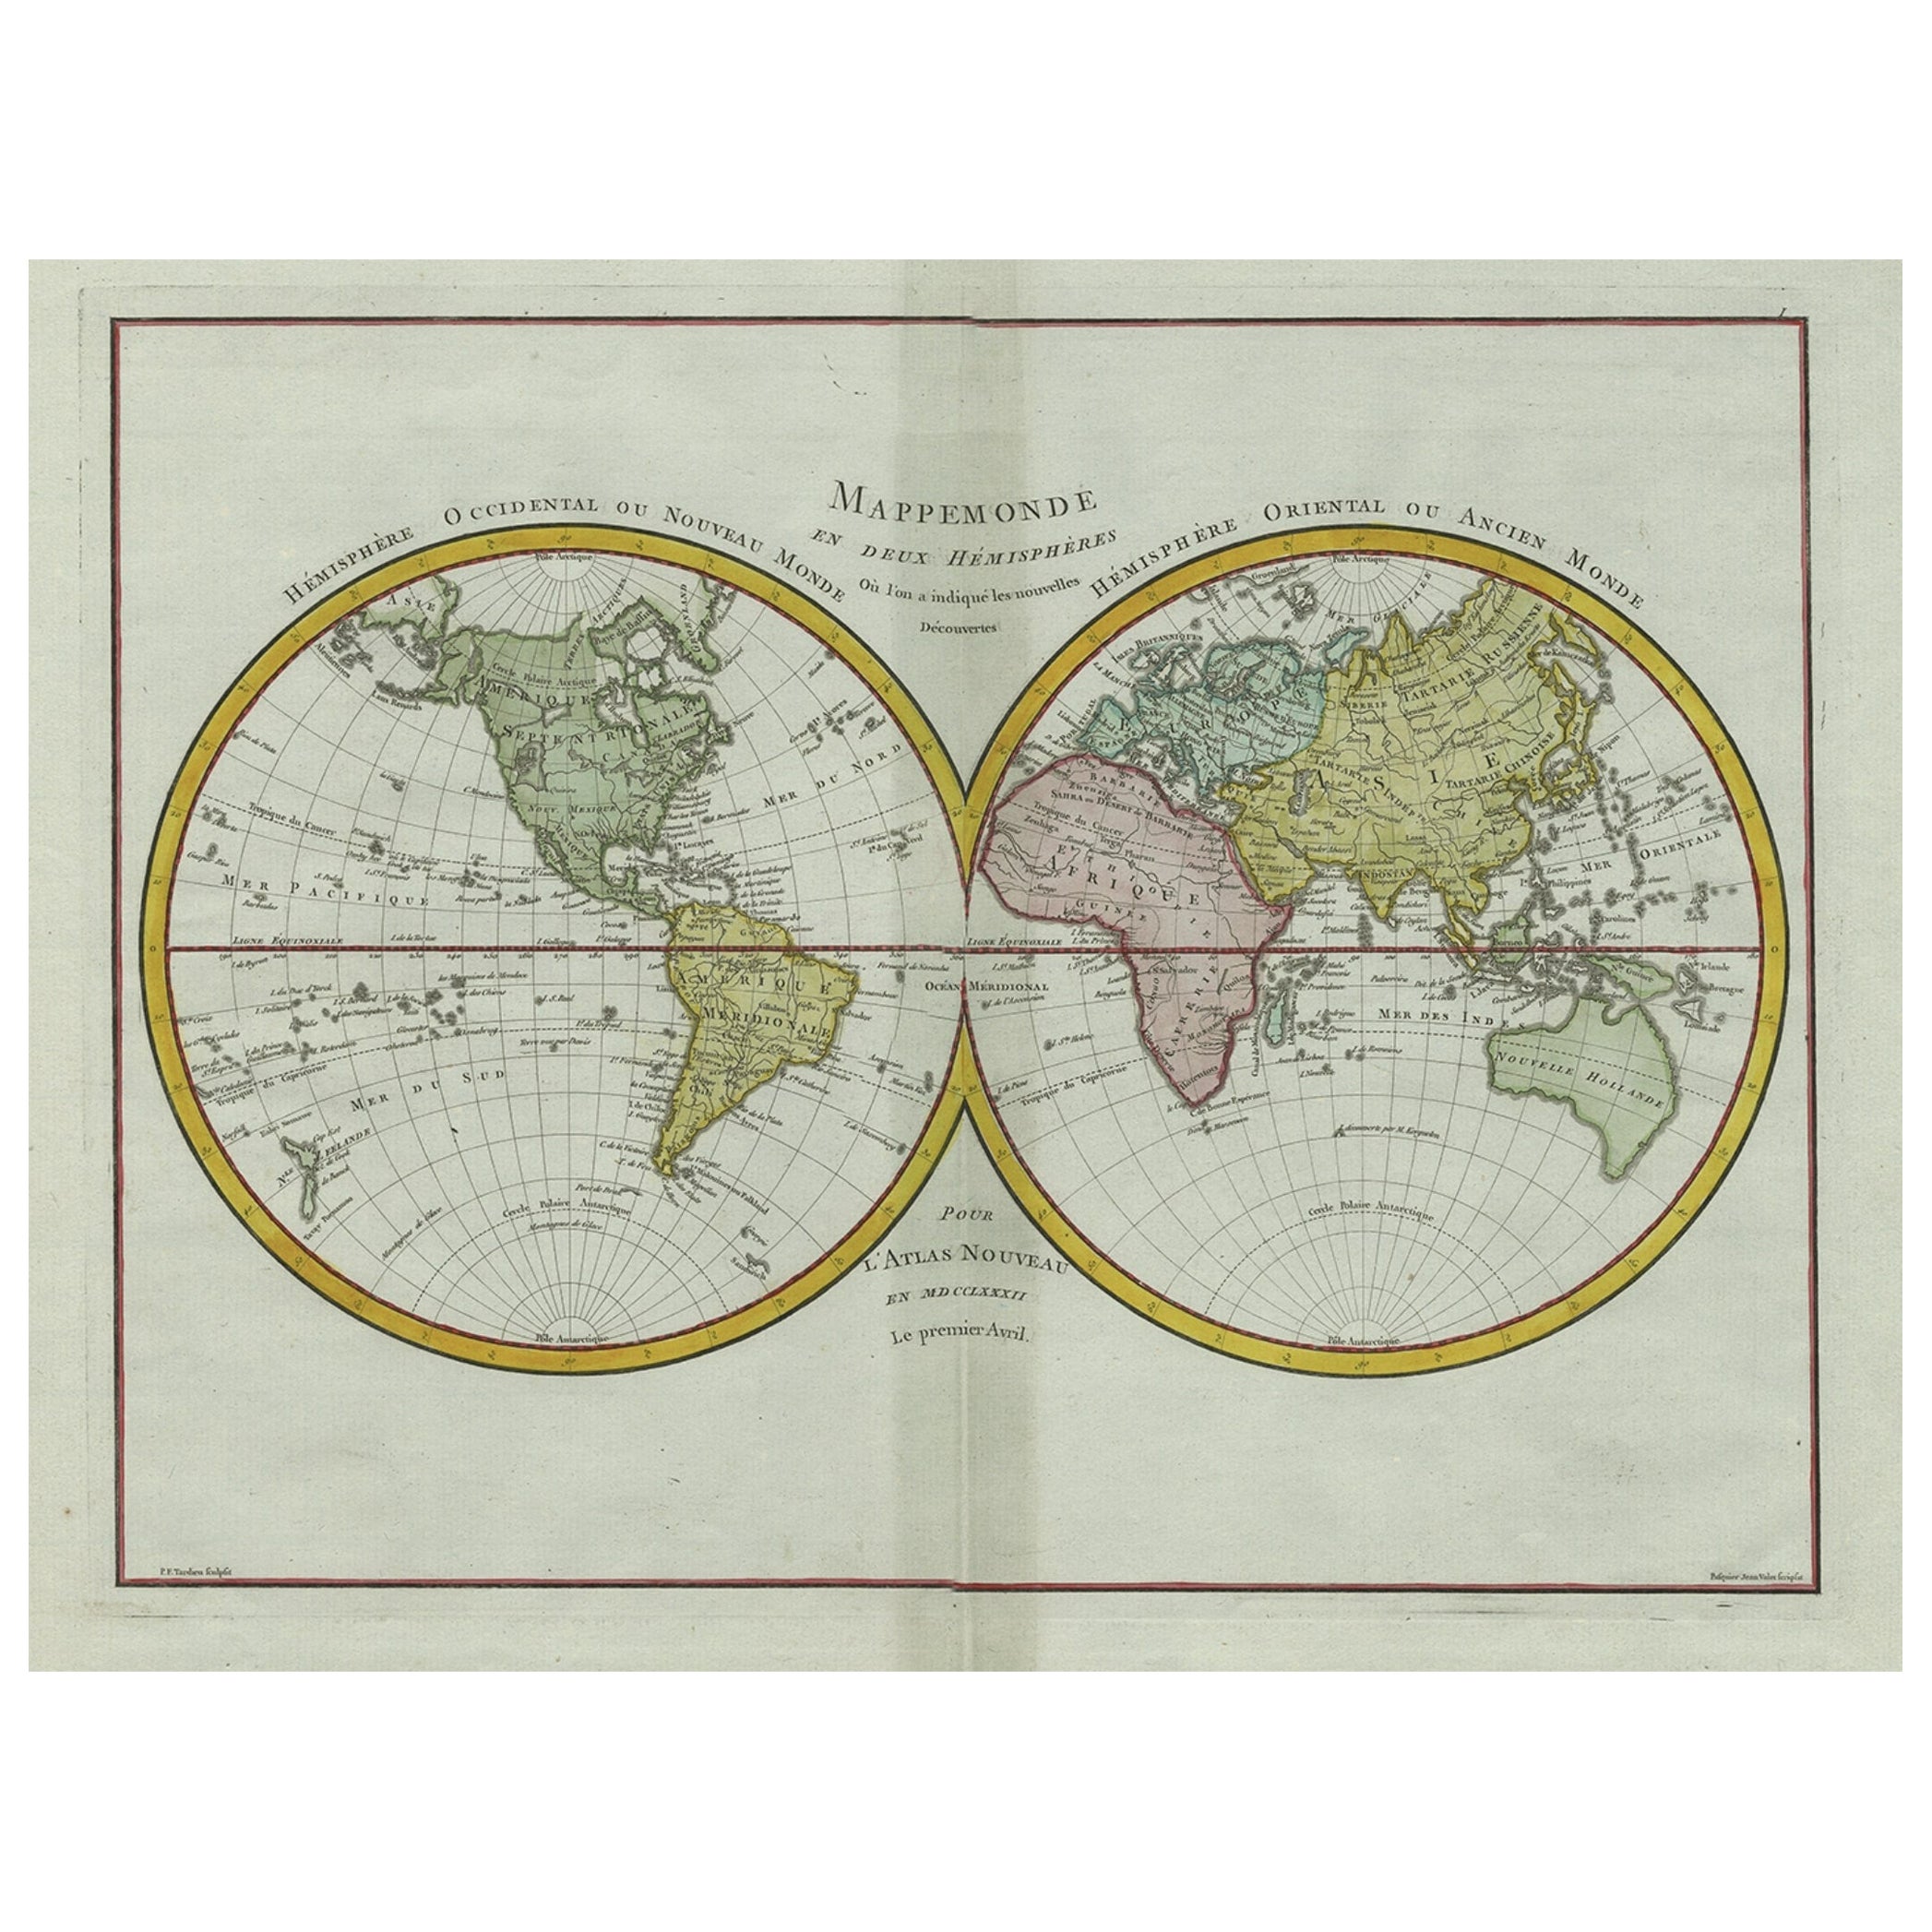 Carte ancienne originale gravée du monde entier, colorée et décorative, vers 1780